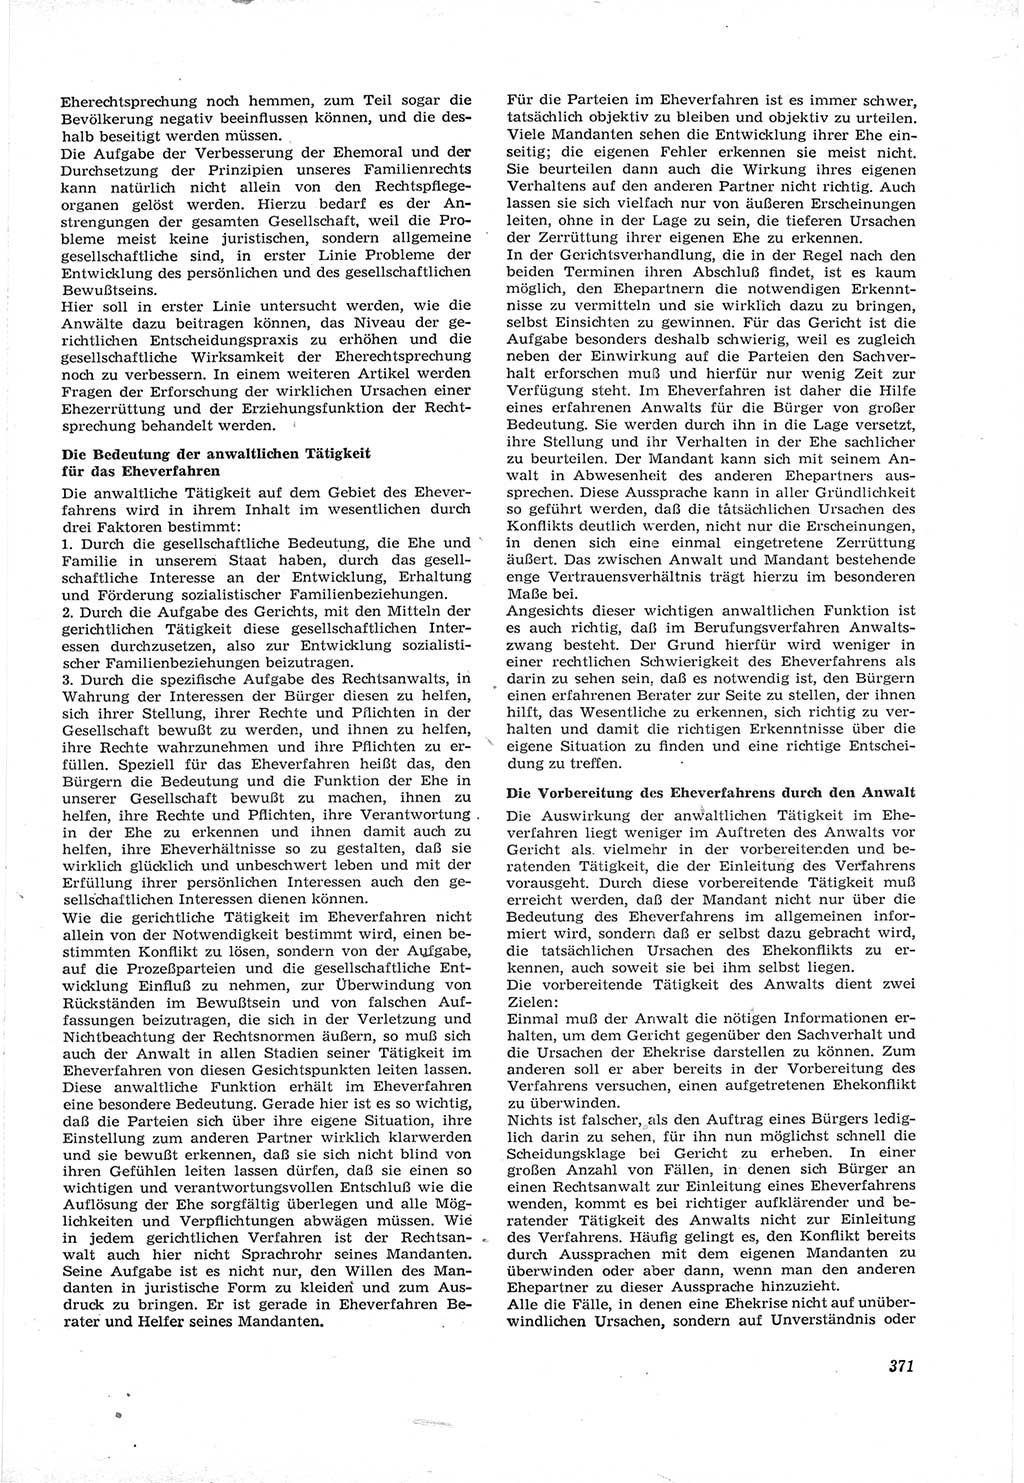 Neue Justiz (NJ), Zeitschrift für Recht und Rechtswissenschaft [Deutsche Demokratische Republik (DDR)], 17. Jahrgang 1963, Seite 371 (NJ DDR 1963, S. 371)